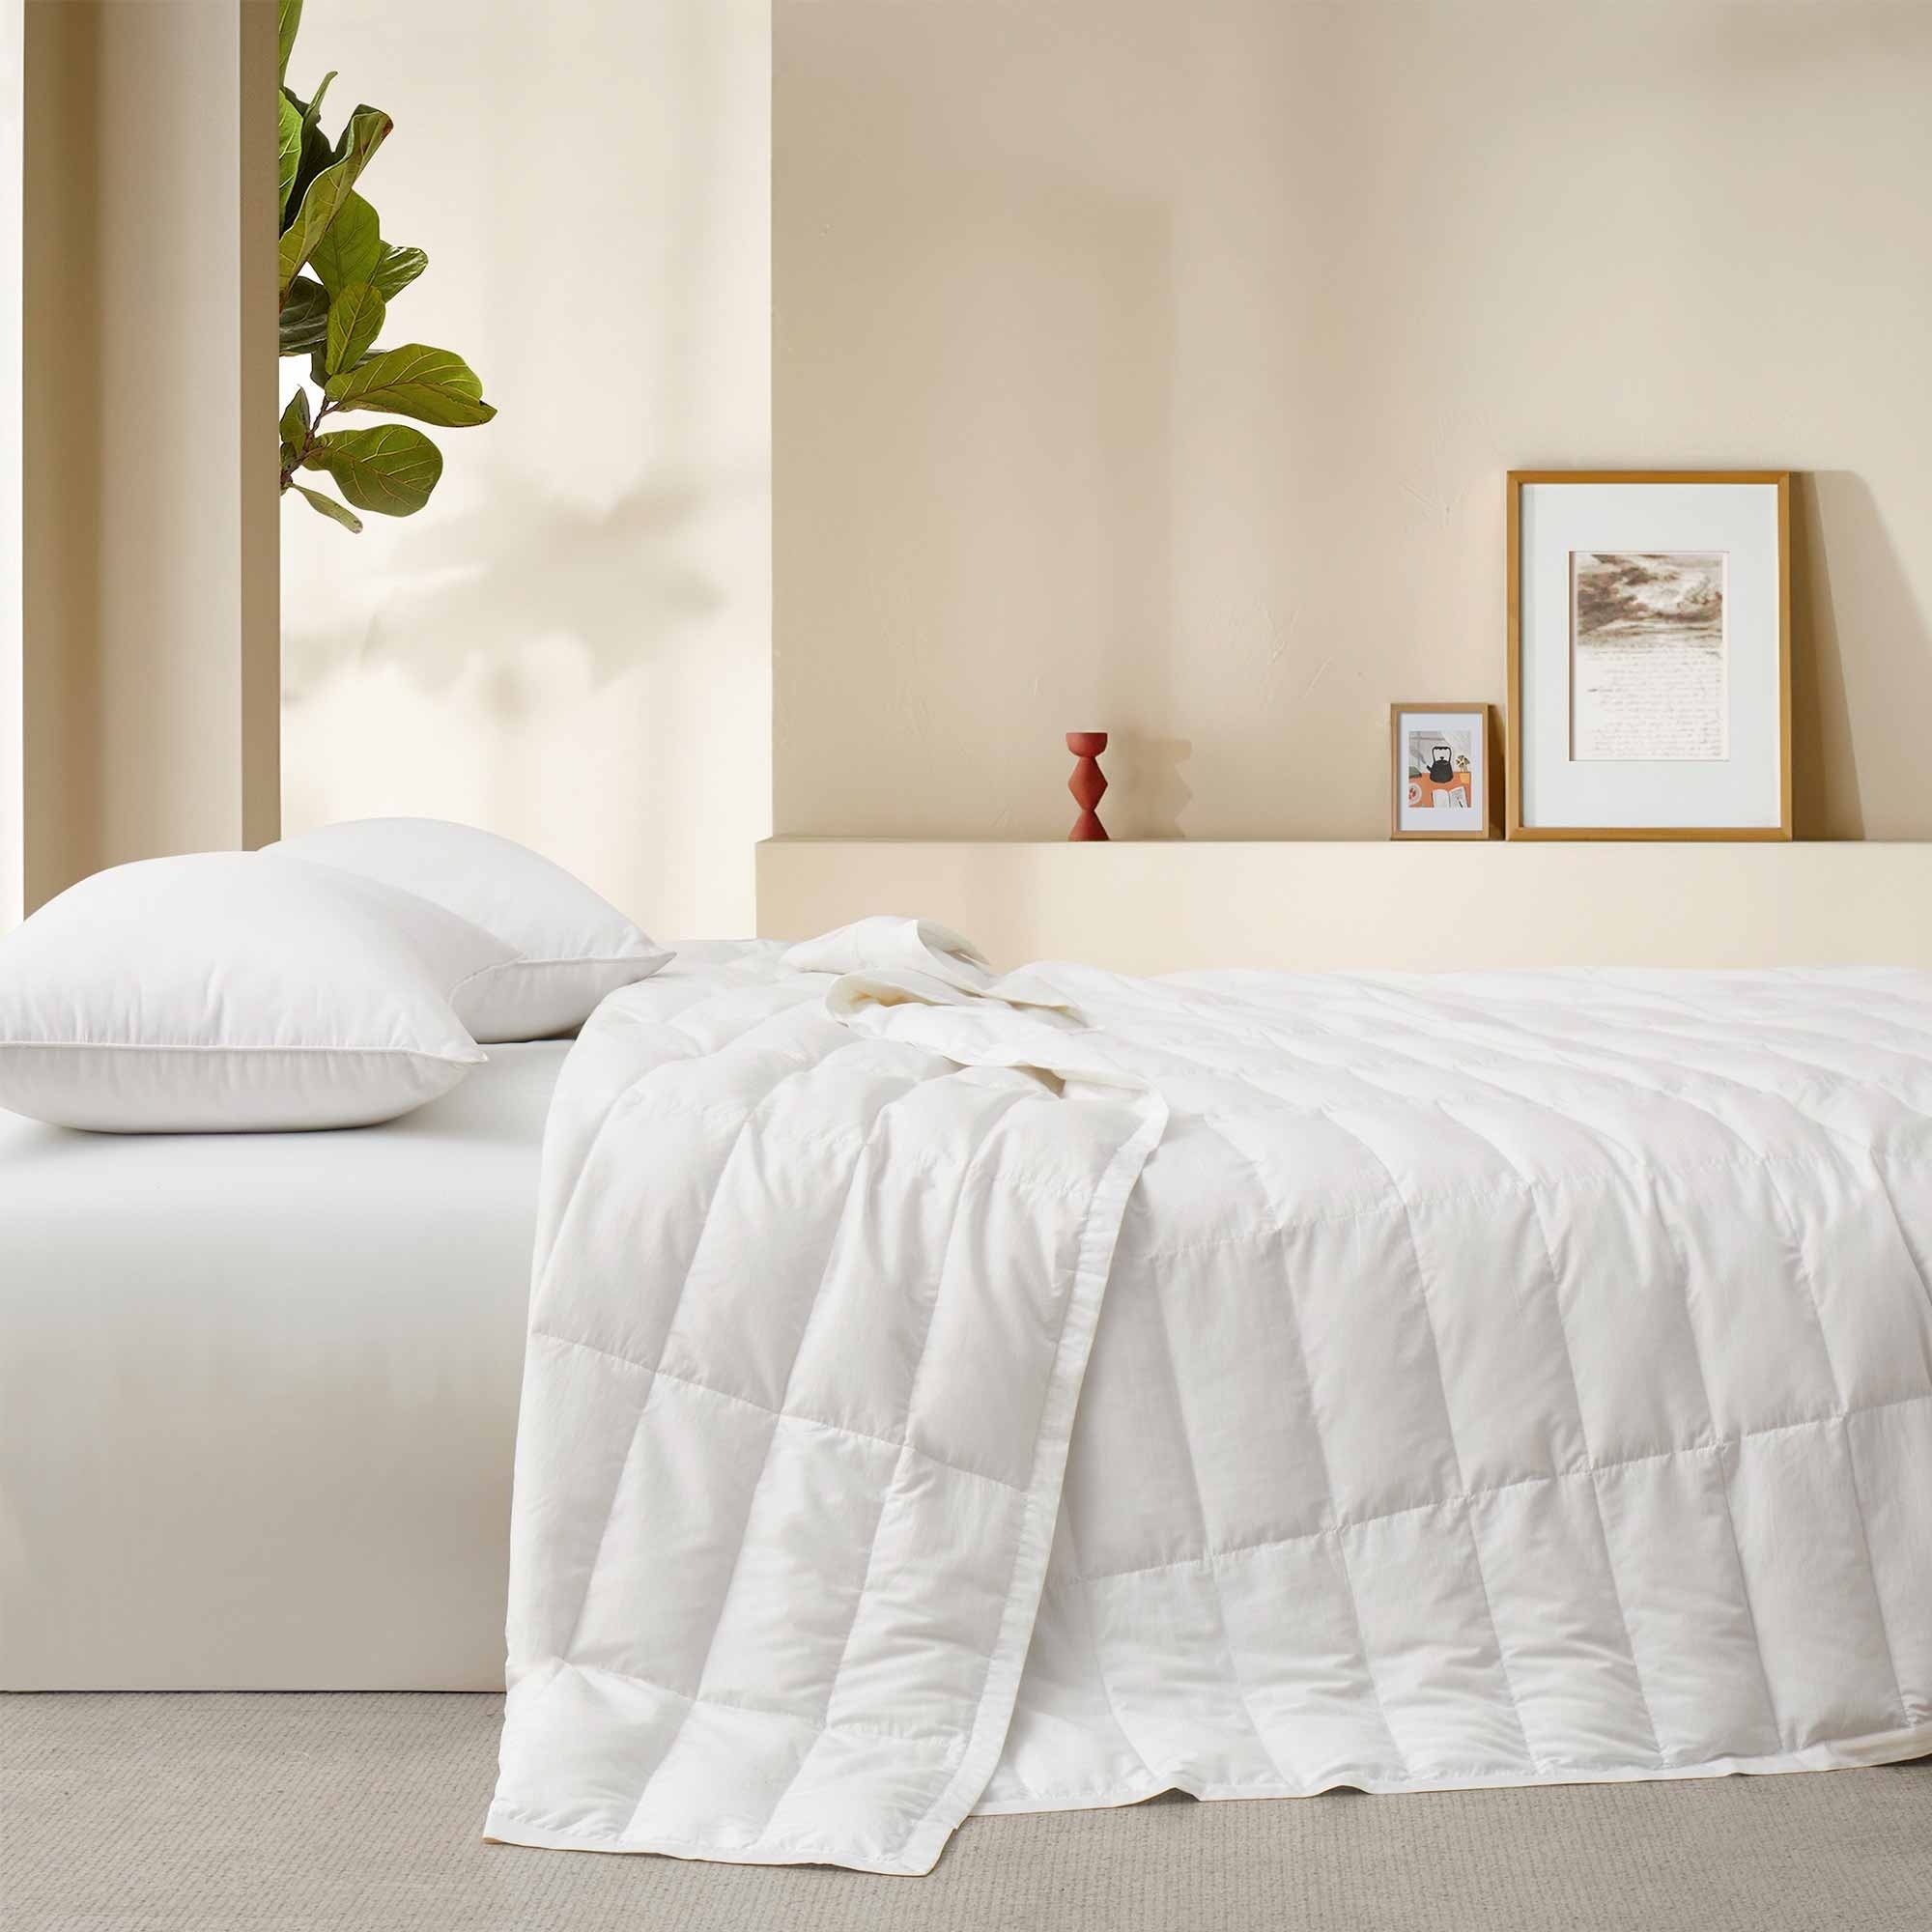 TENCELâ¢ Lyocell Lightweight Cooling Down Blanket-Luxurious Comfort Summer Blanket - White, Full/Queen